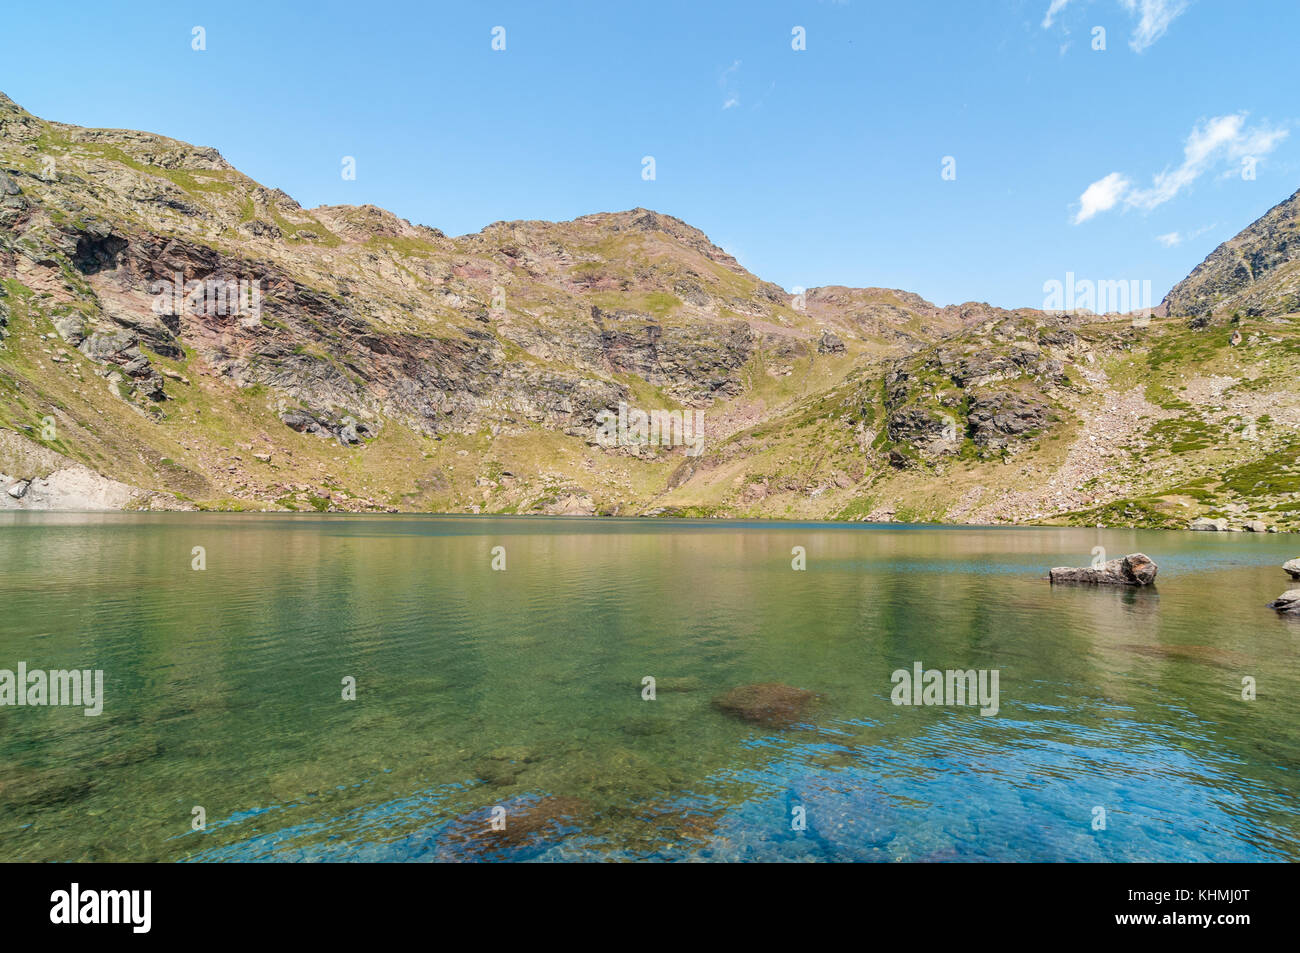 Angesichts der hohen See namens "Estany de més amunt" in der Nähe von Ordino, Tristaina, Andorra Stockfoto